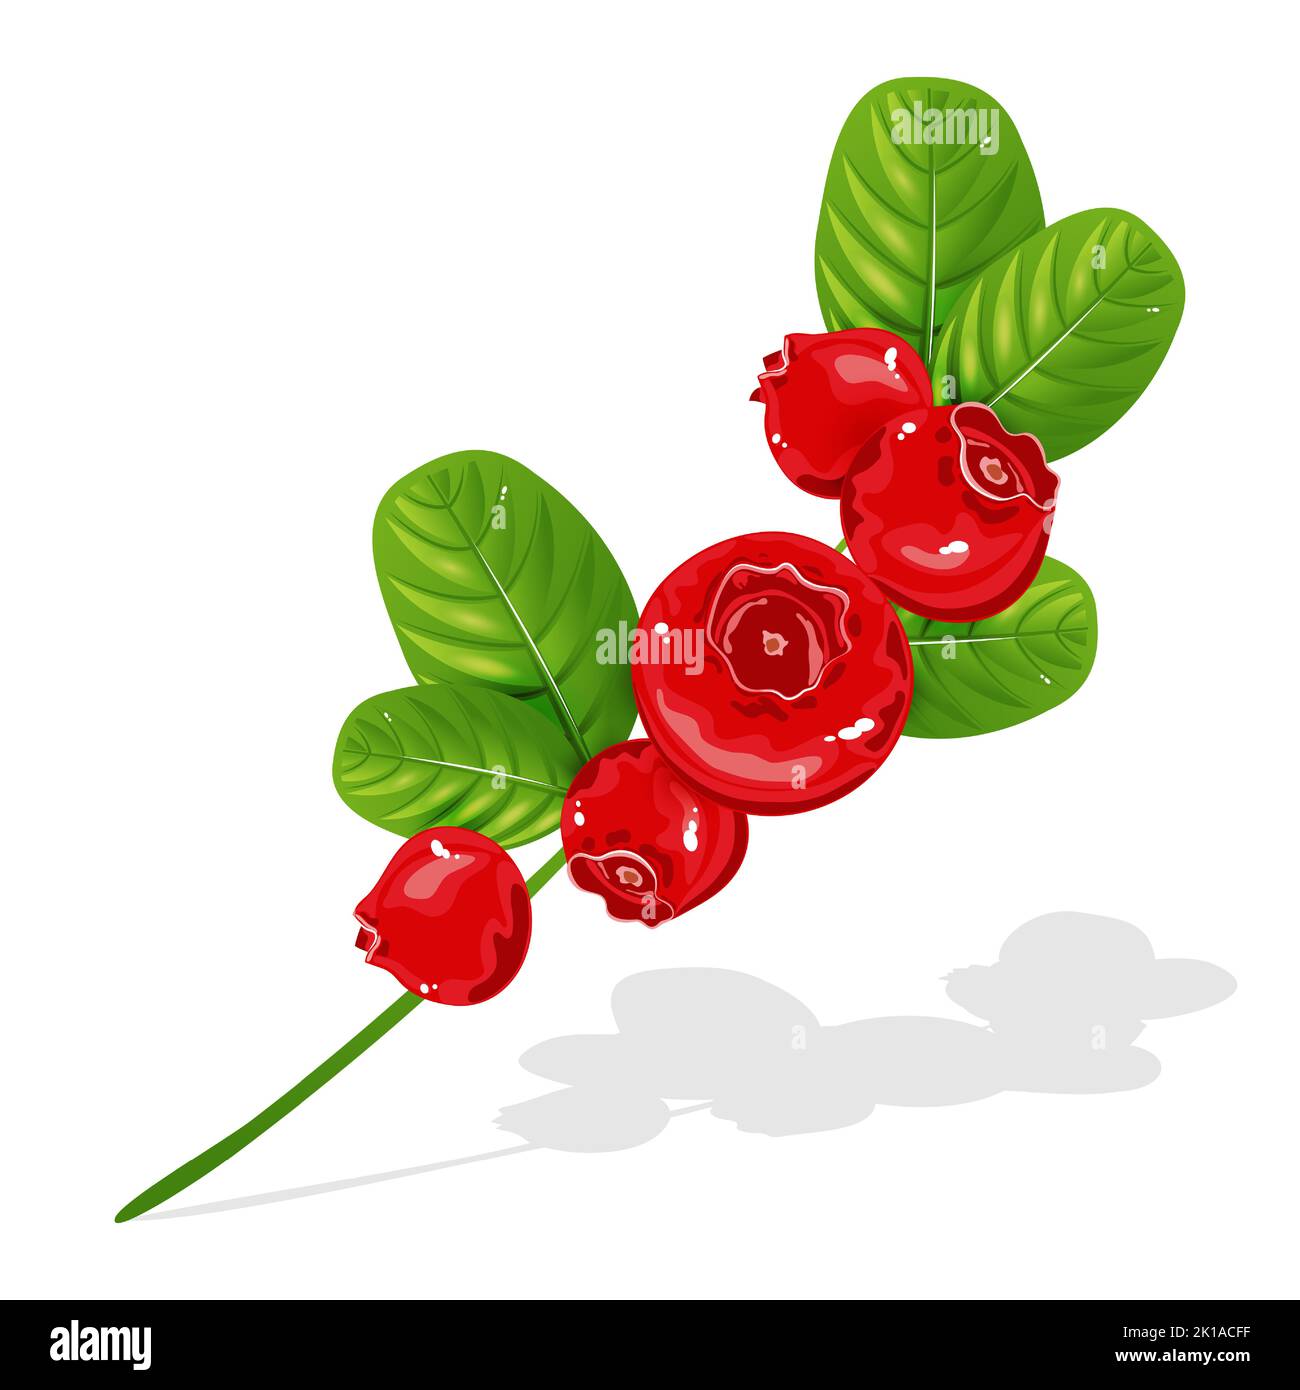 Ramo di vacchetta isolato su sfondo bianco. Belle bacche rosse con foglie. Una pianta boschiva con foglie sempreverde di colore leathery.Vector Illustration. Illustrazione Vettoriale